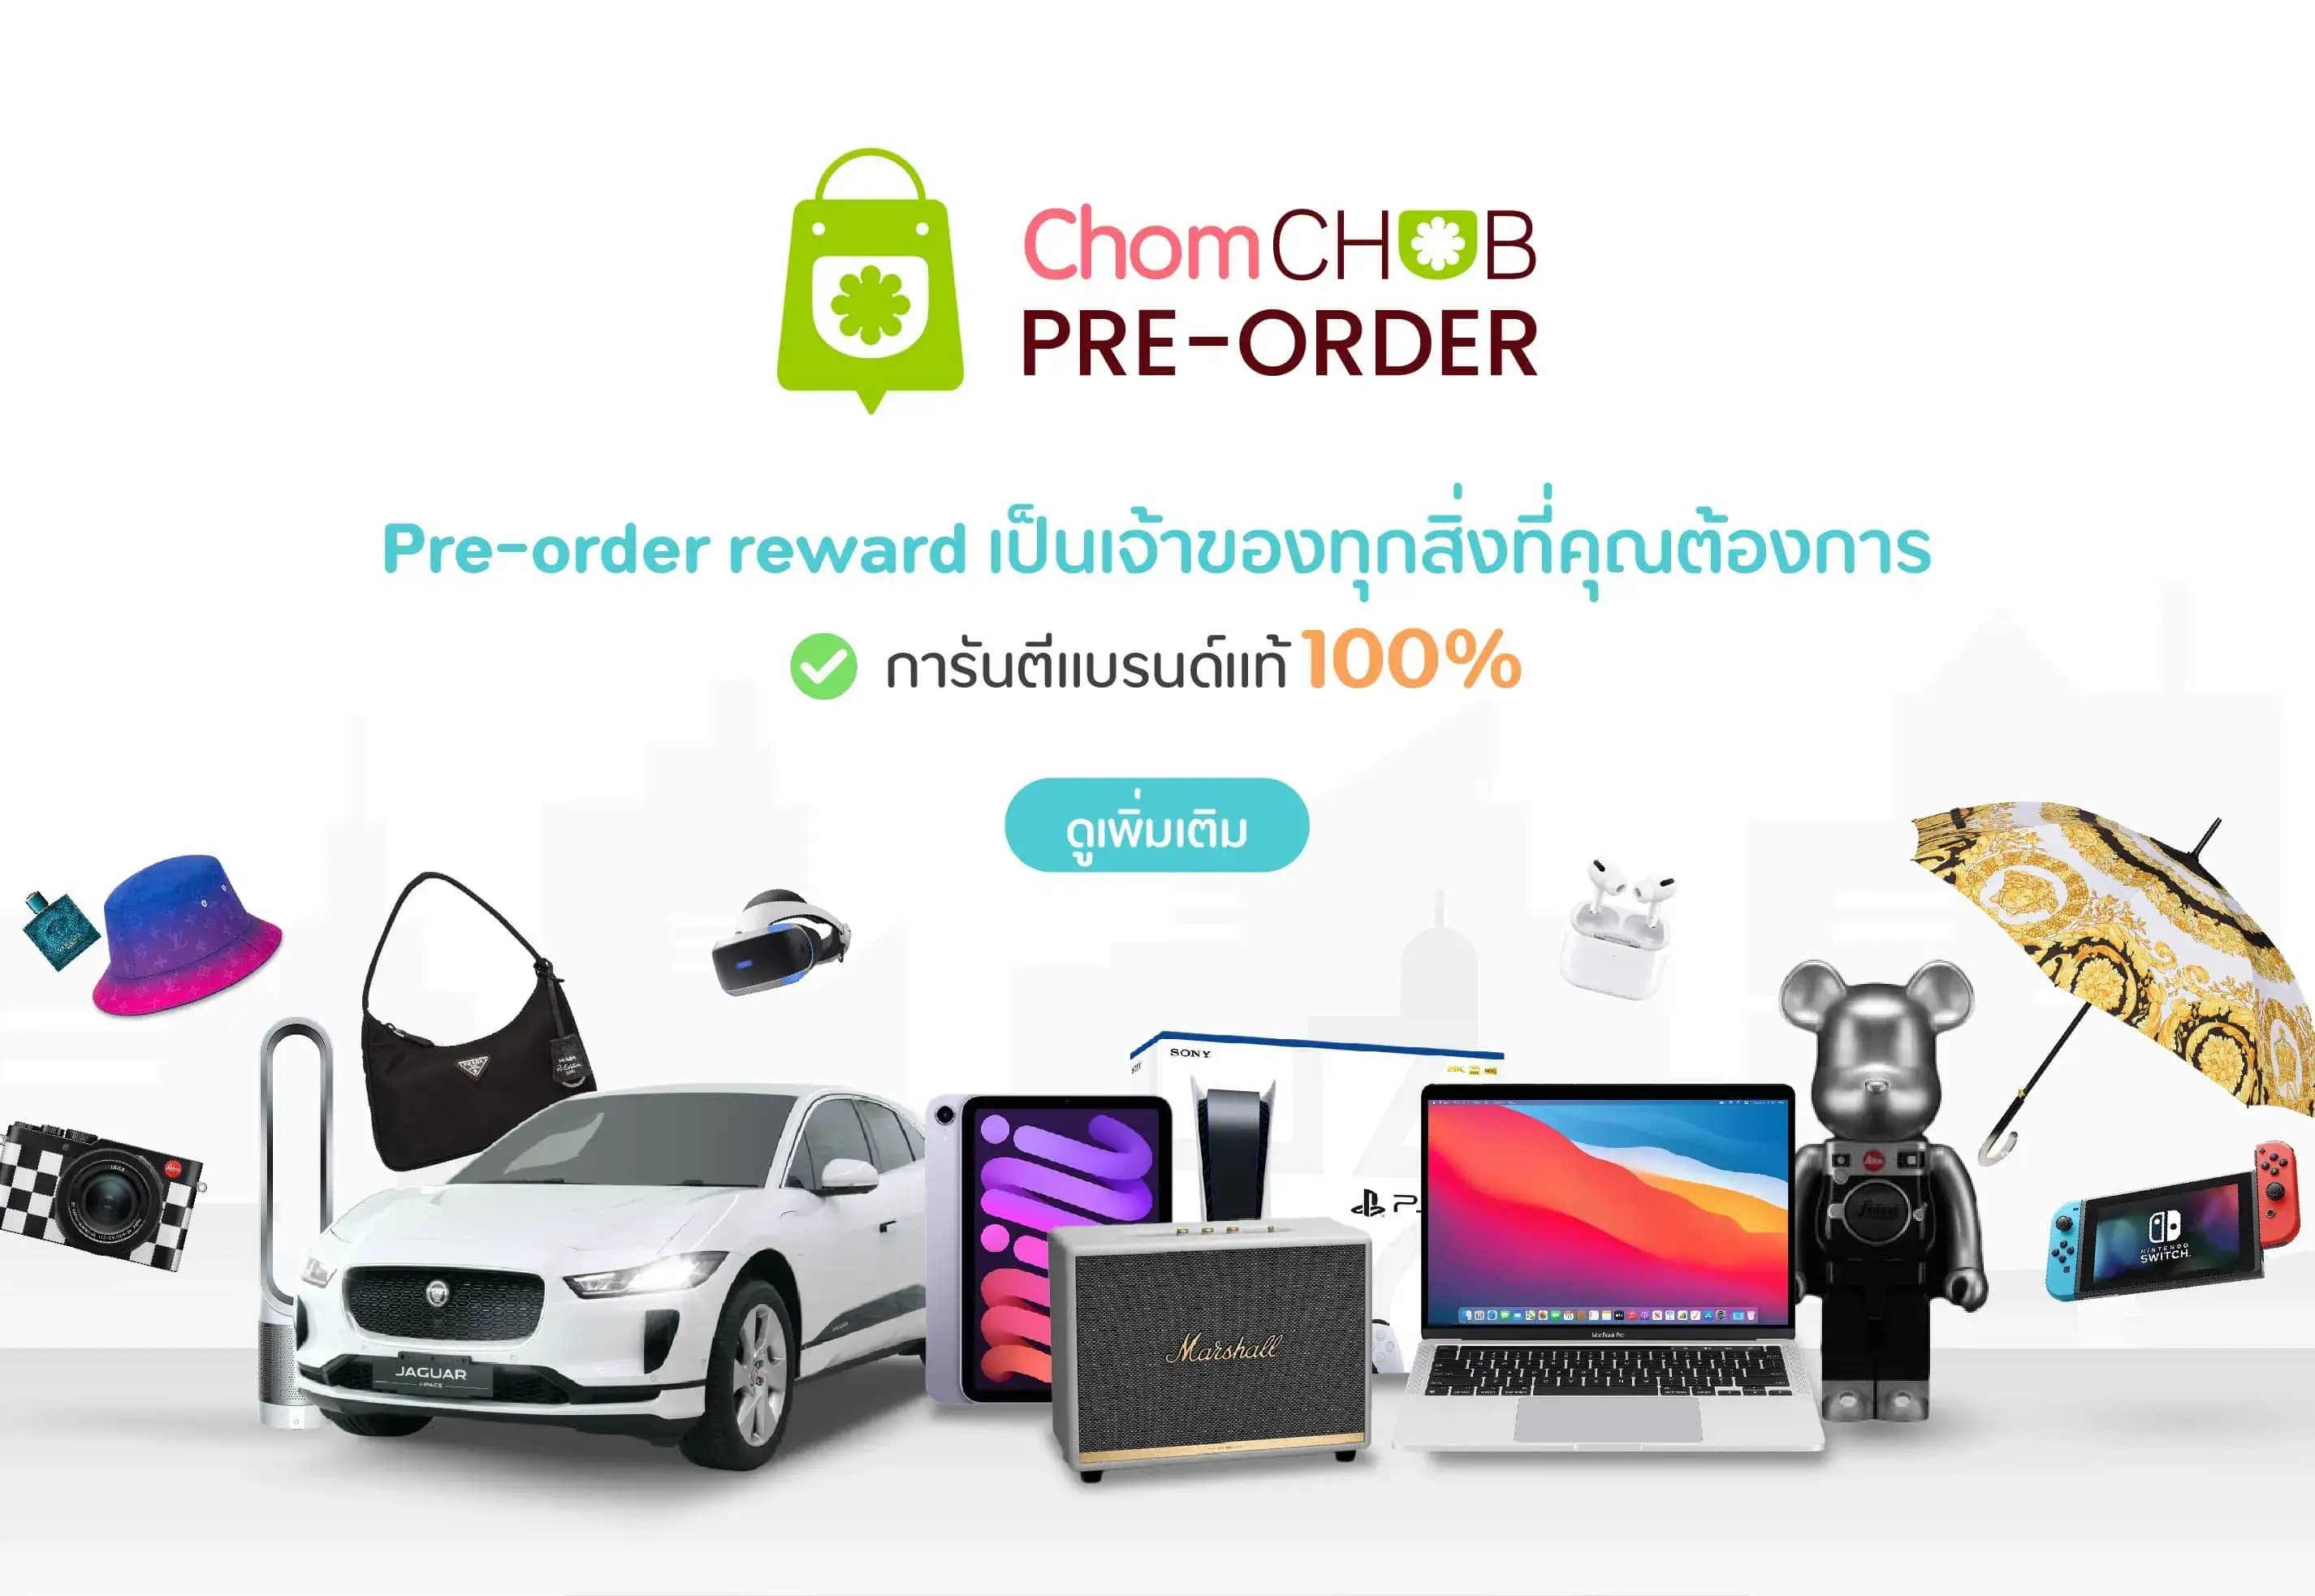 chomchob-pre-order-reward-medium